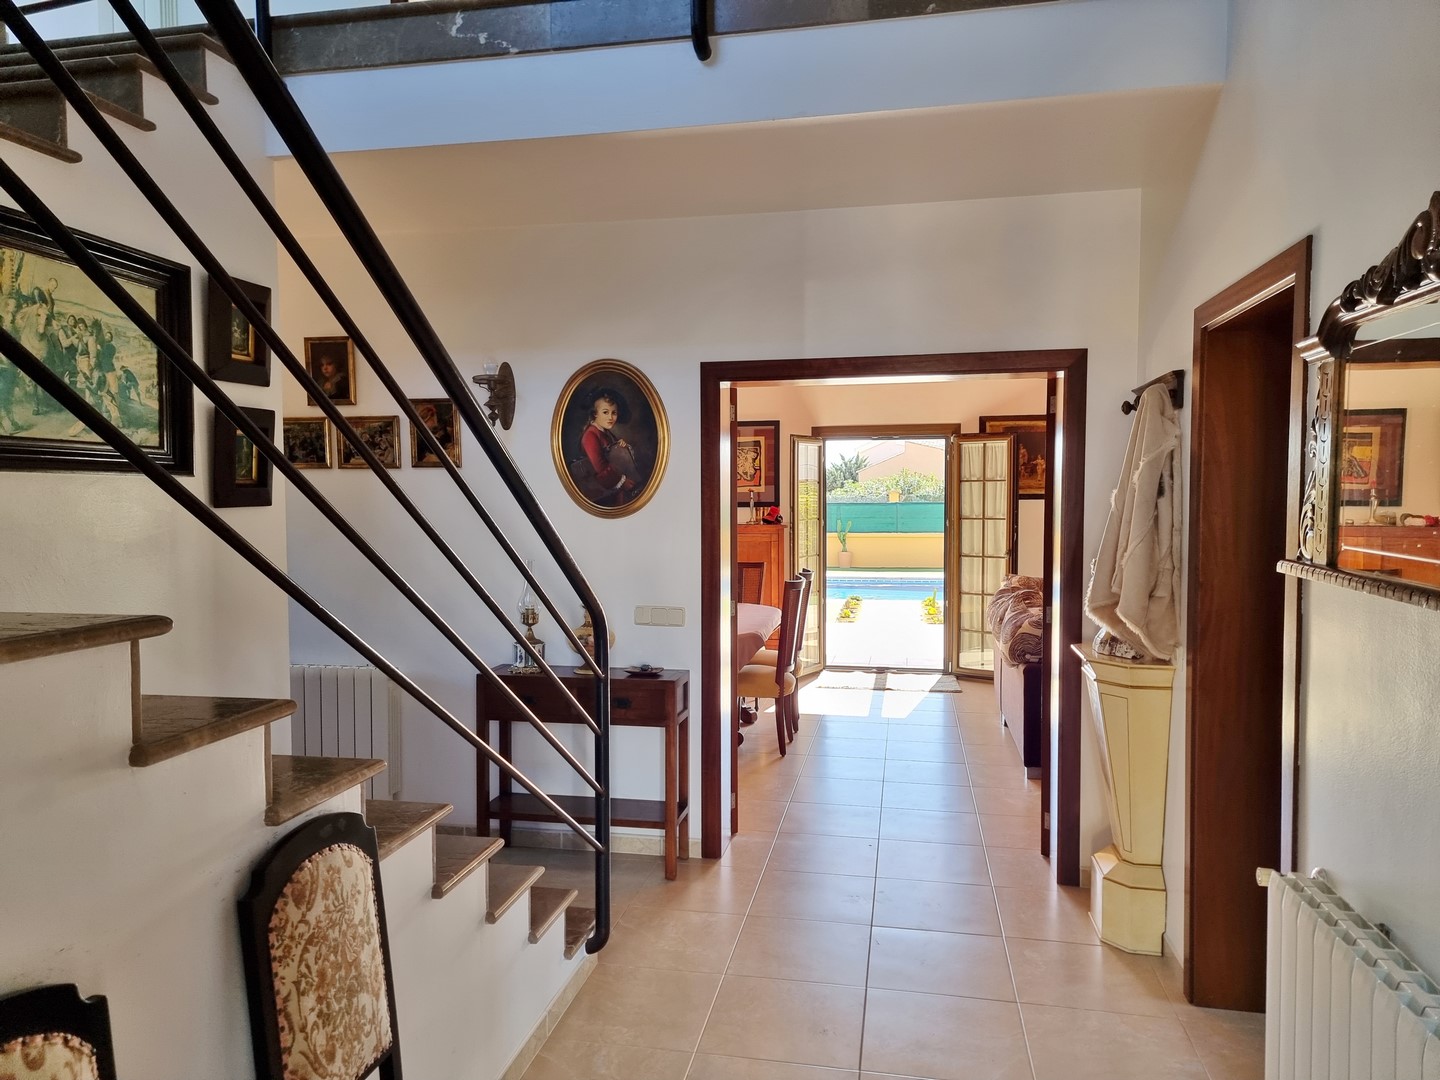 SA COMA: Moderne Villa mit offizieller Vermietungslizenz und gehobener Ausstattung in ruhiger Wohnlage